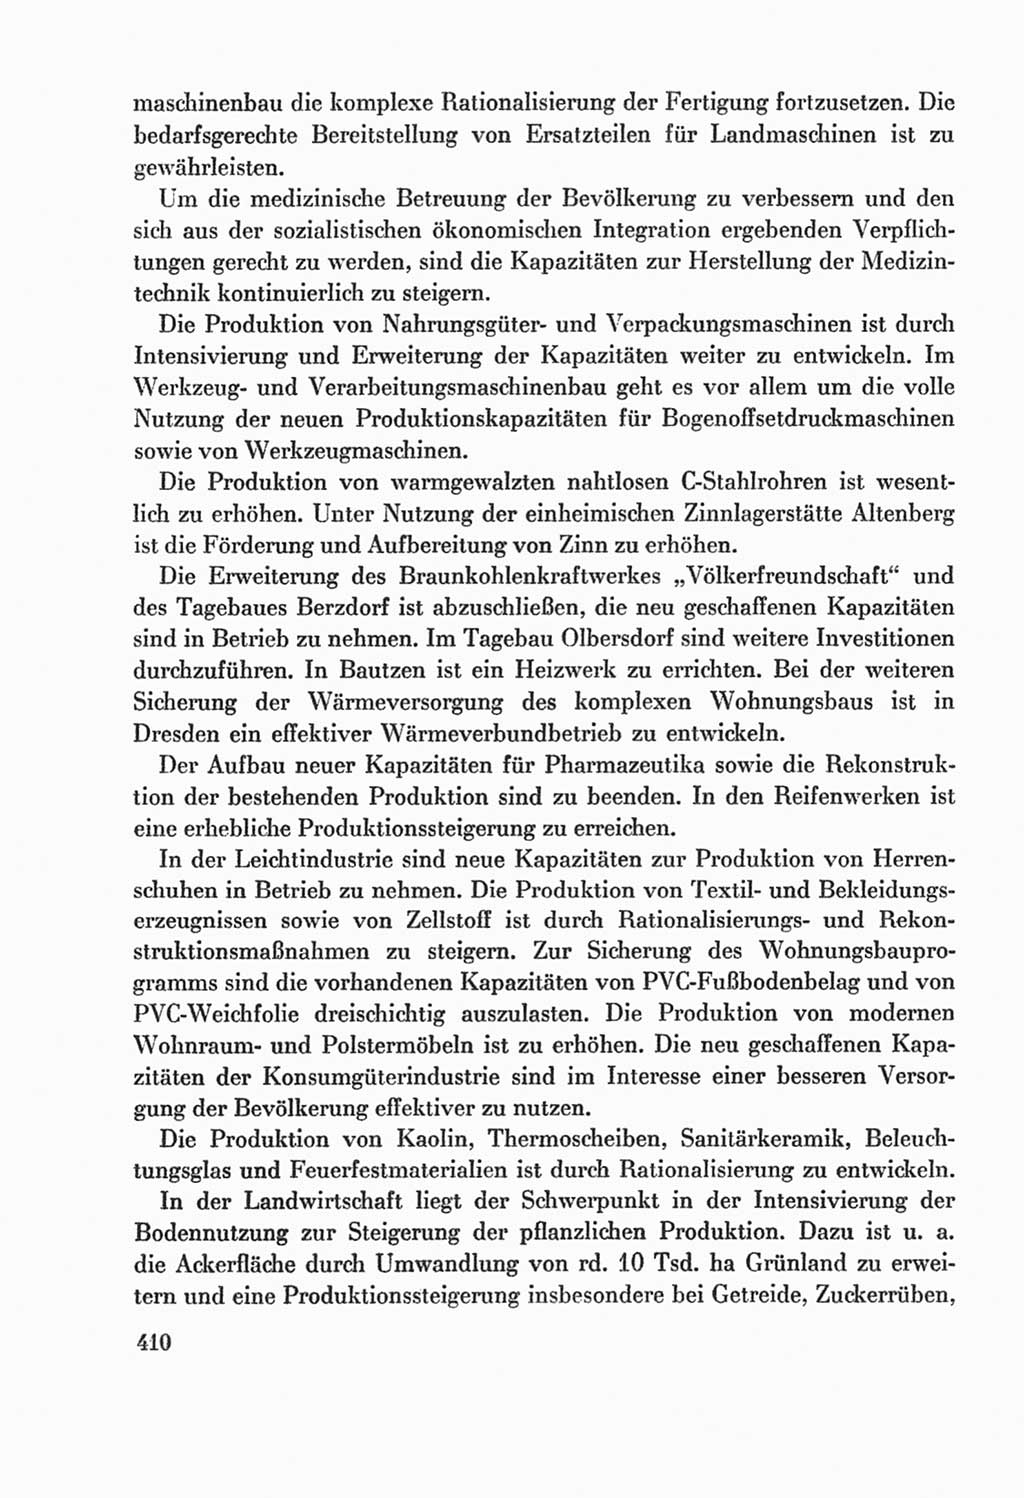 Protokoll der Verhandlungen des Ⅸ. Parteitages der Sozialistischen Einheitspartei Deutschlands (SED) [Deutsche Demokratische Republik (DDR)] 1976, Band 2, Seite 410 (Prot. Verh. Ⅸ. PT SED DDR 1976, Bd. 2, S. 410)